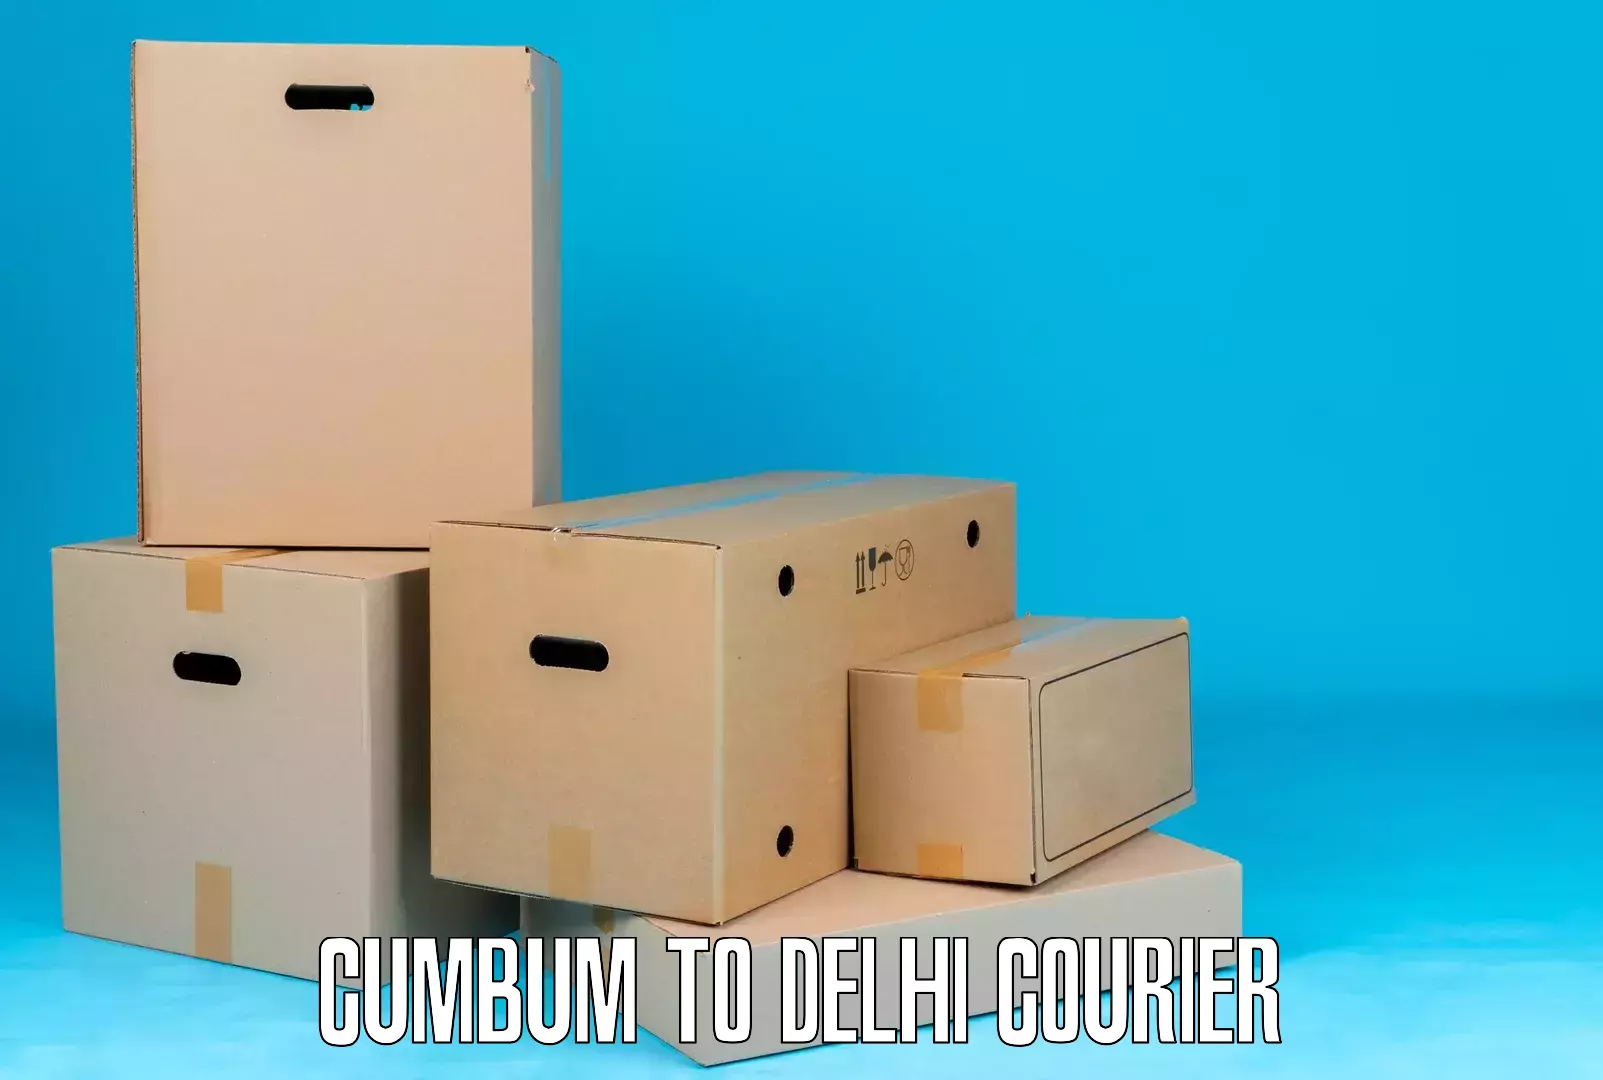 Efficient parcel service Cumbum to NCR